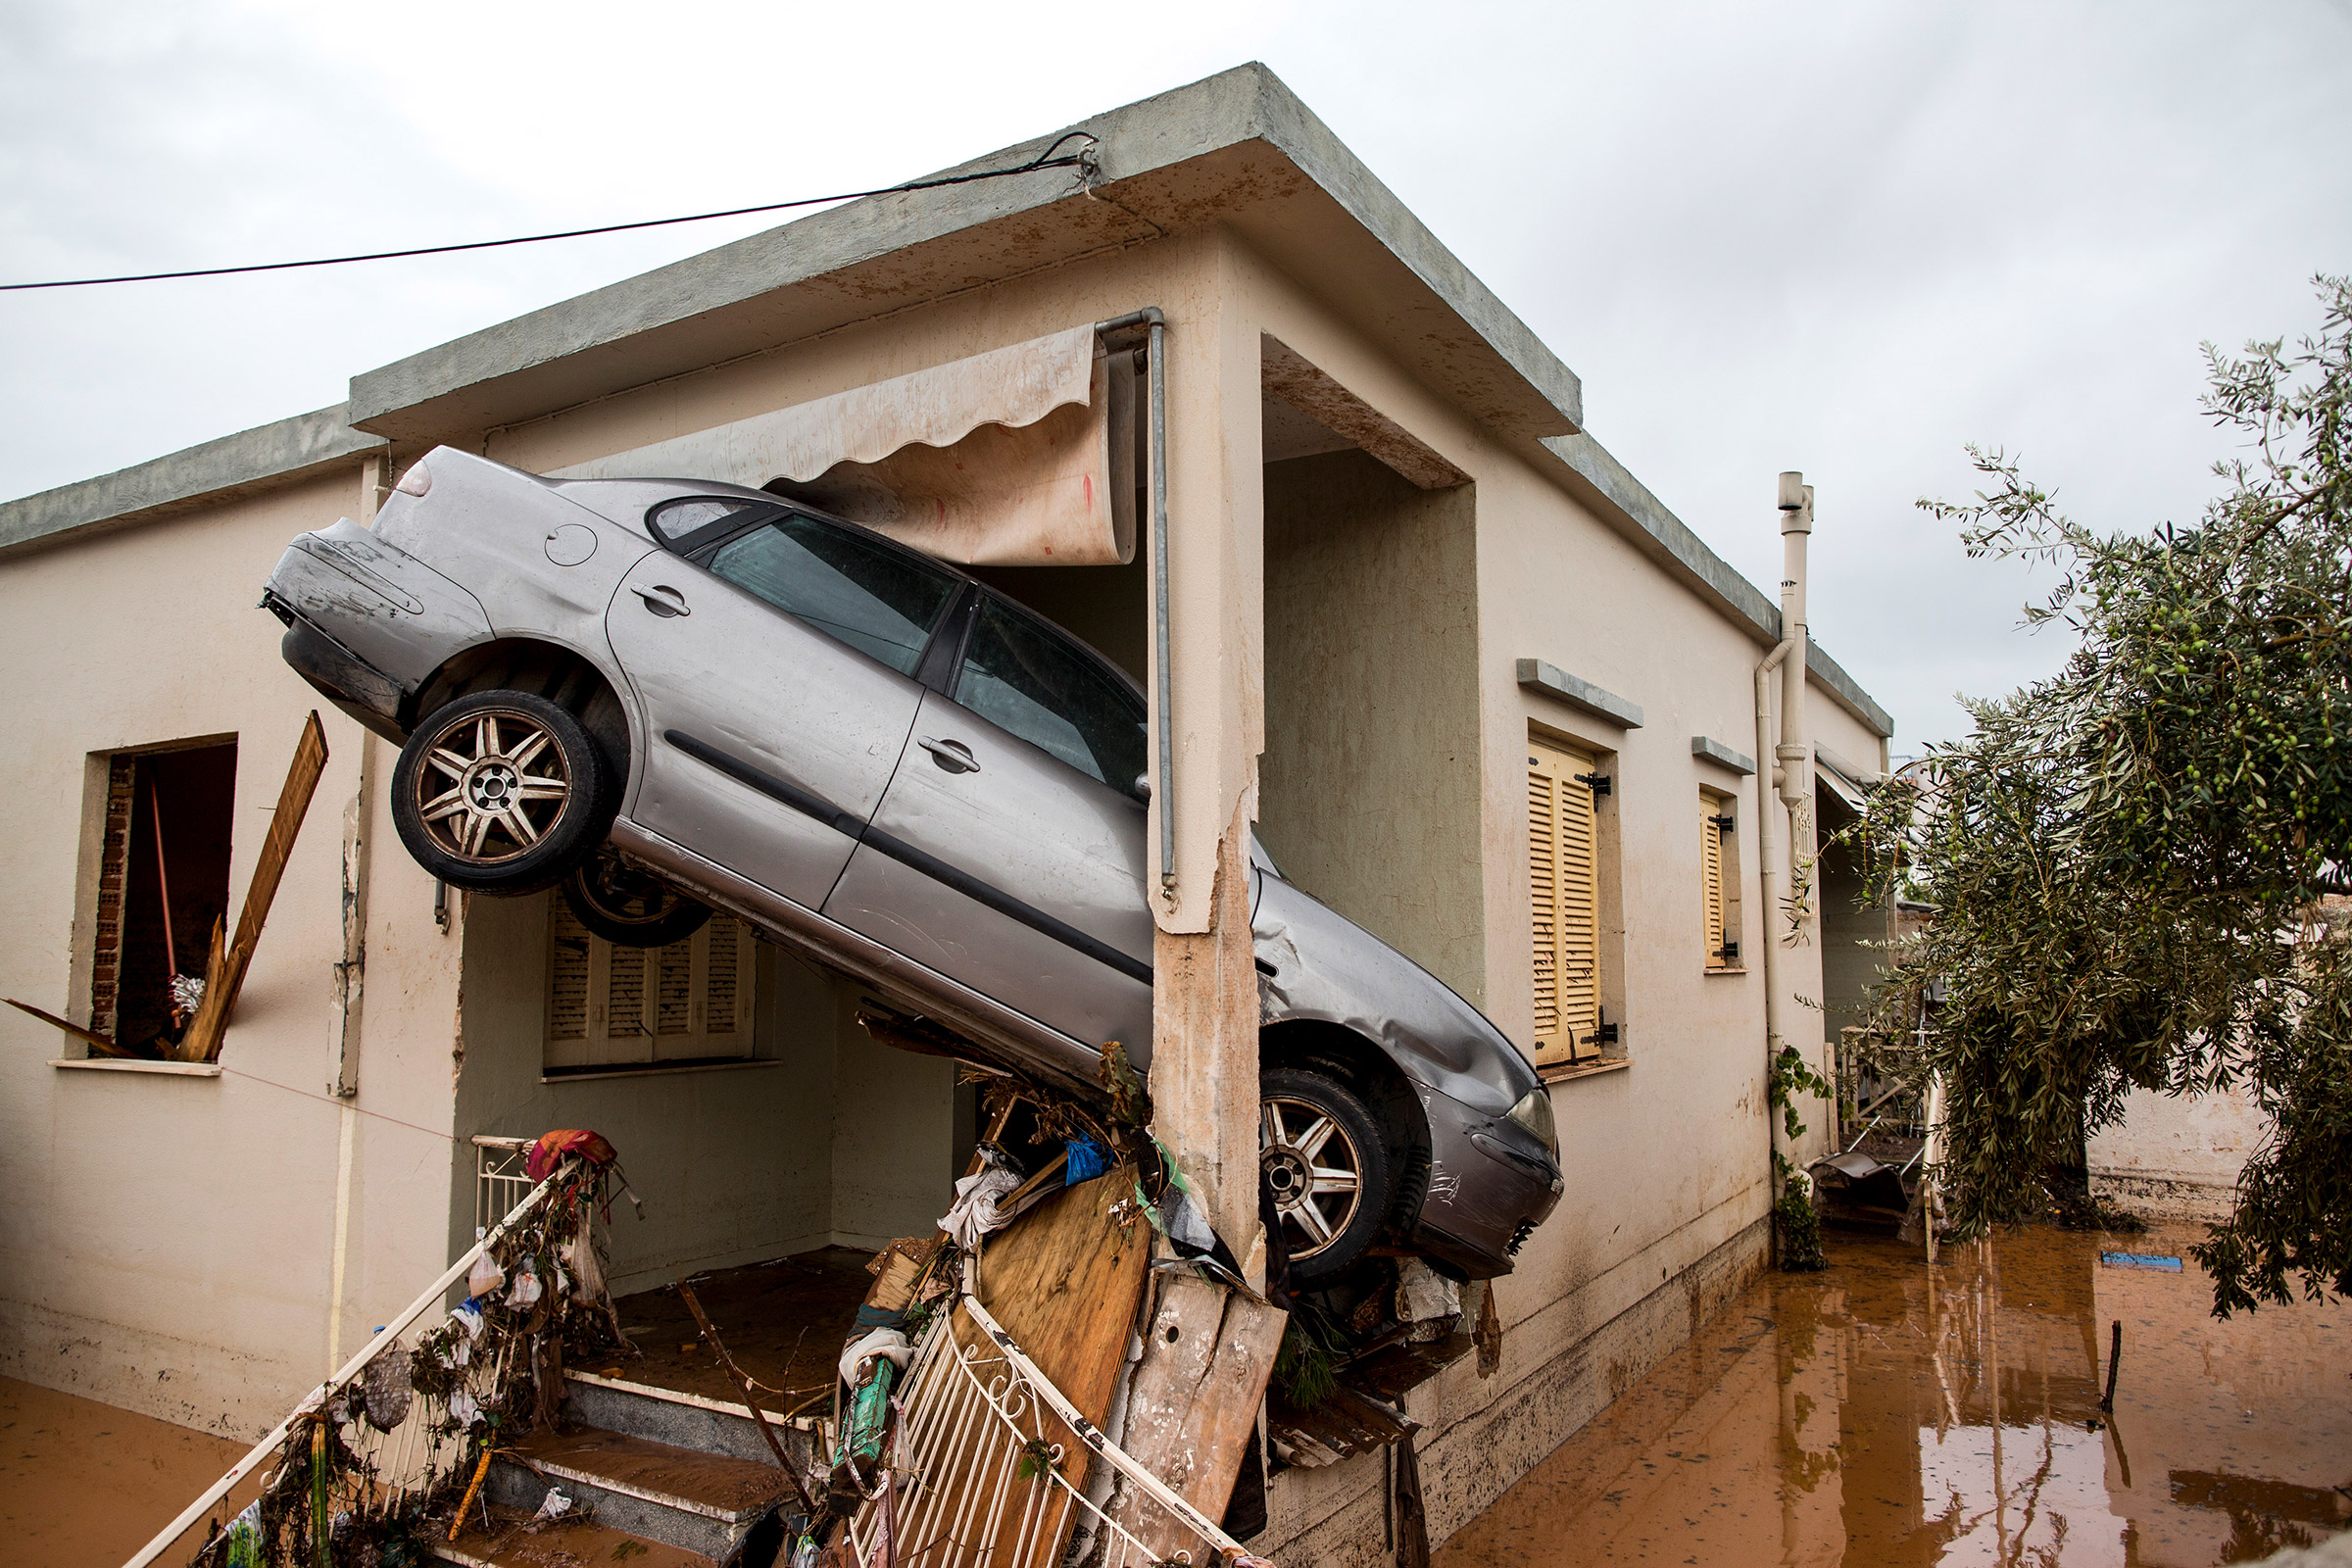 В результате стихийного бедствия были разрушены многие здания, включая жилые дома. По информации сотрудников спасательных служб, они получили более 300 сообщений о затопленных помещениях.


&nbsp;
